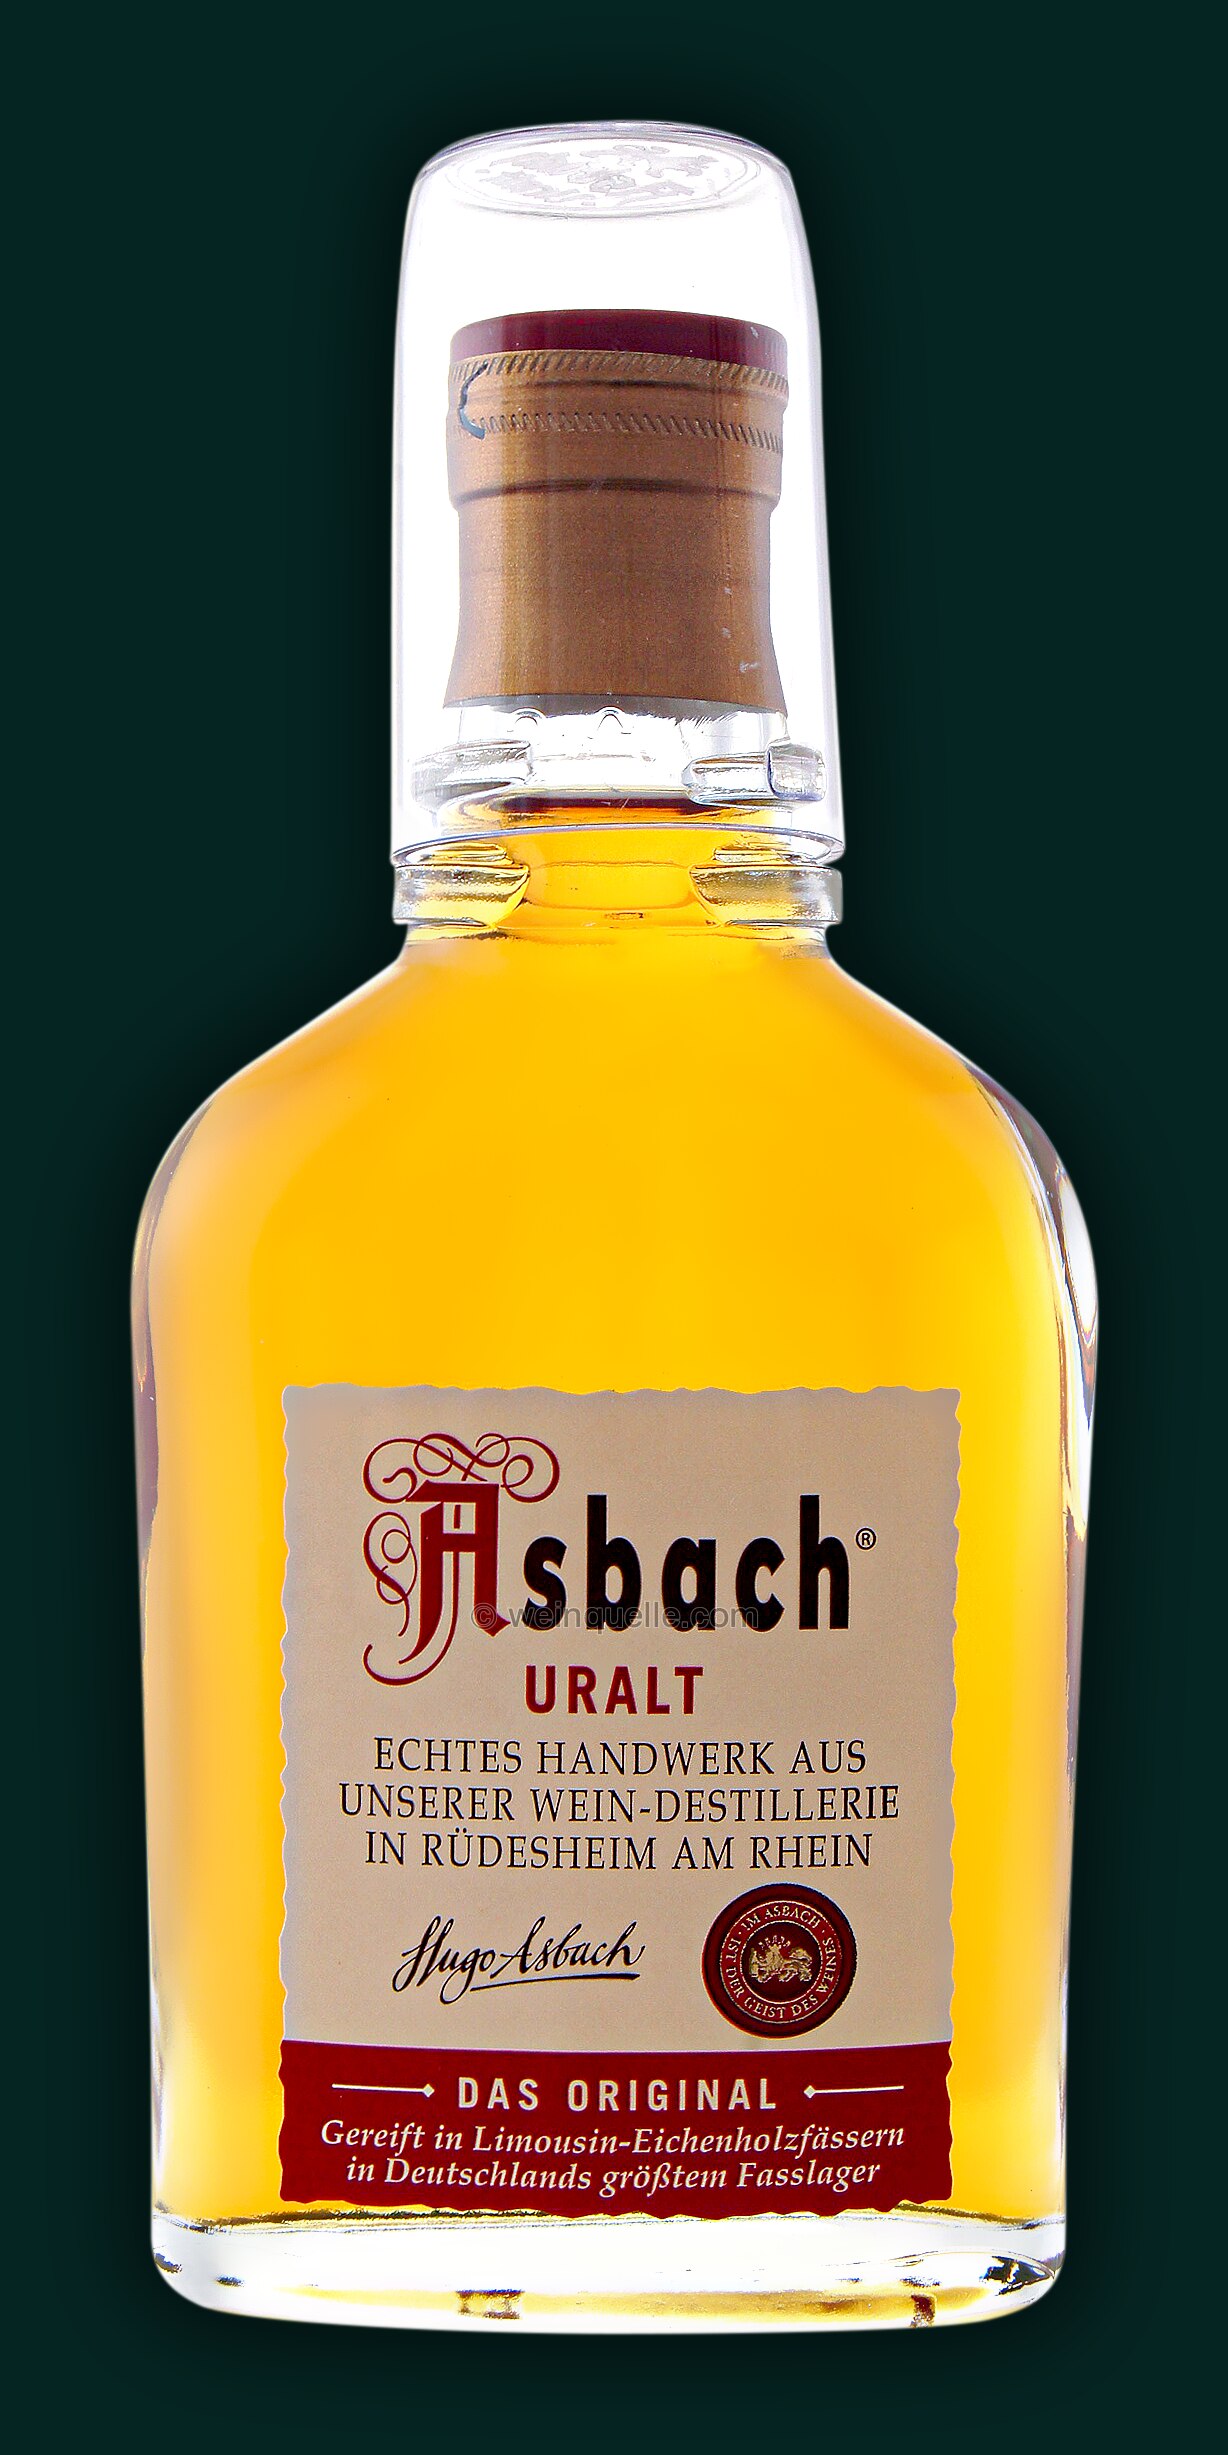 Asbach Uralt 0,1 Lühmann € Weinquelle Liter, 2,95 